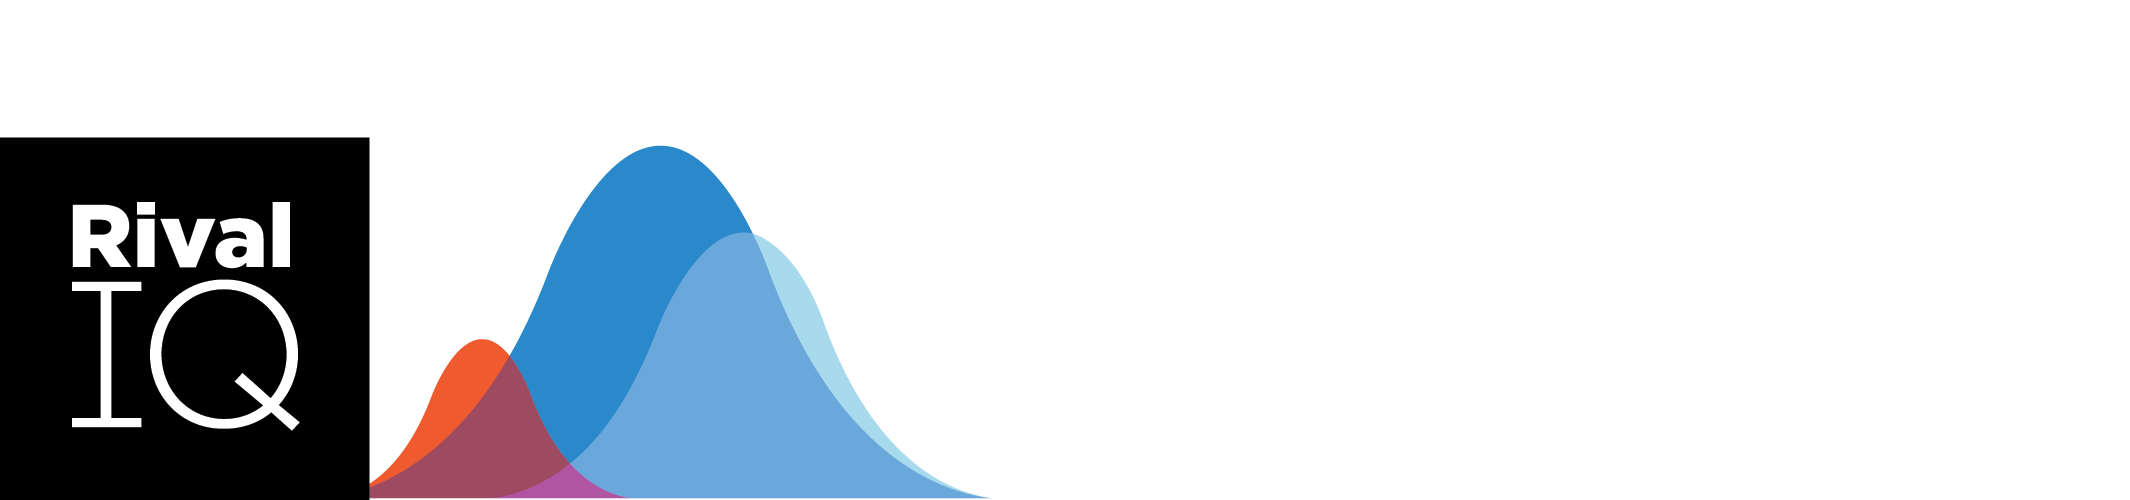 ddm_rev_alt_logo.png